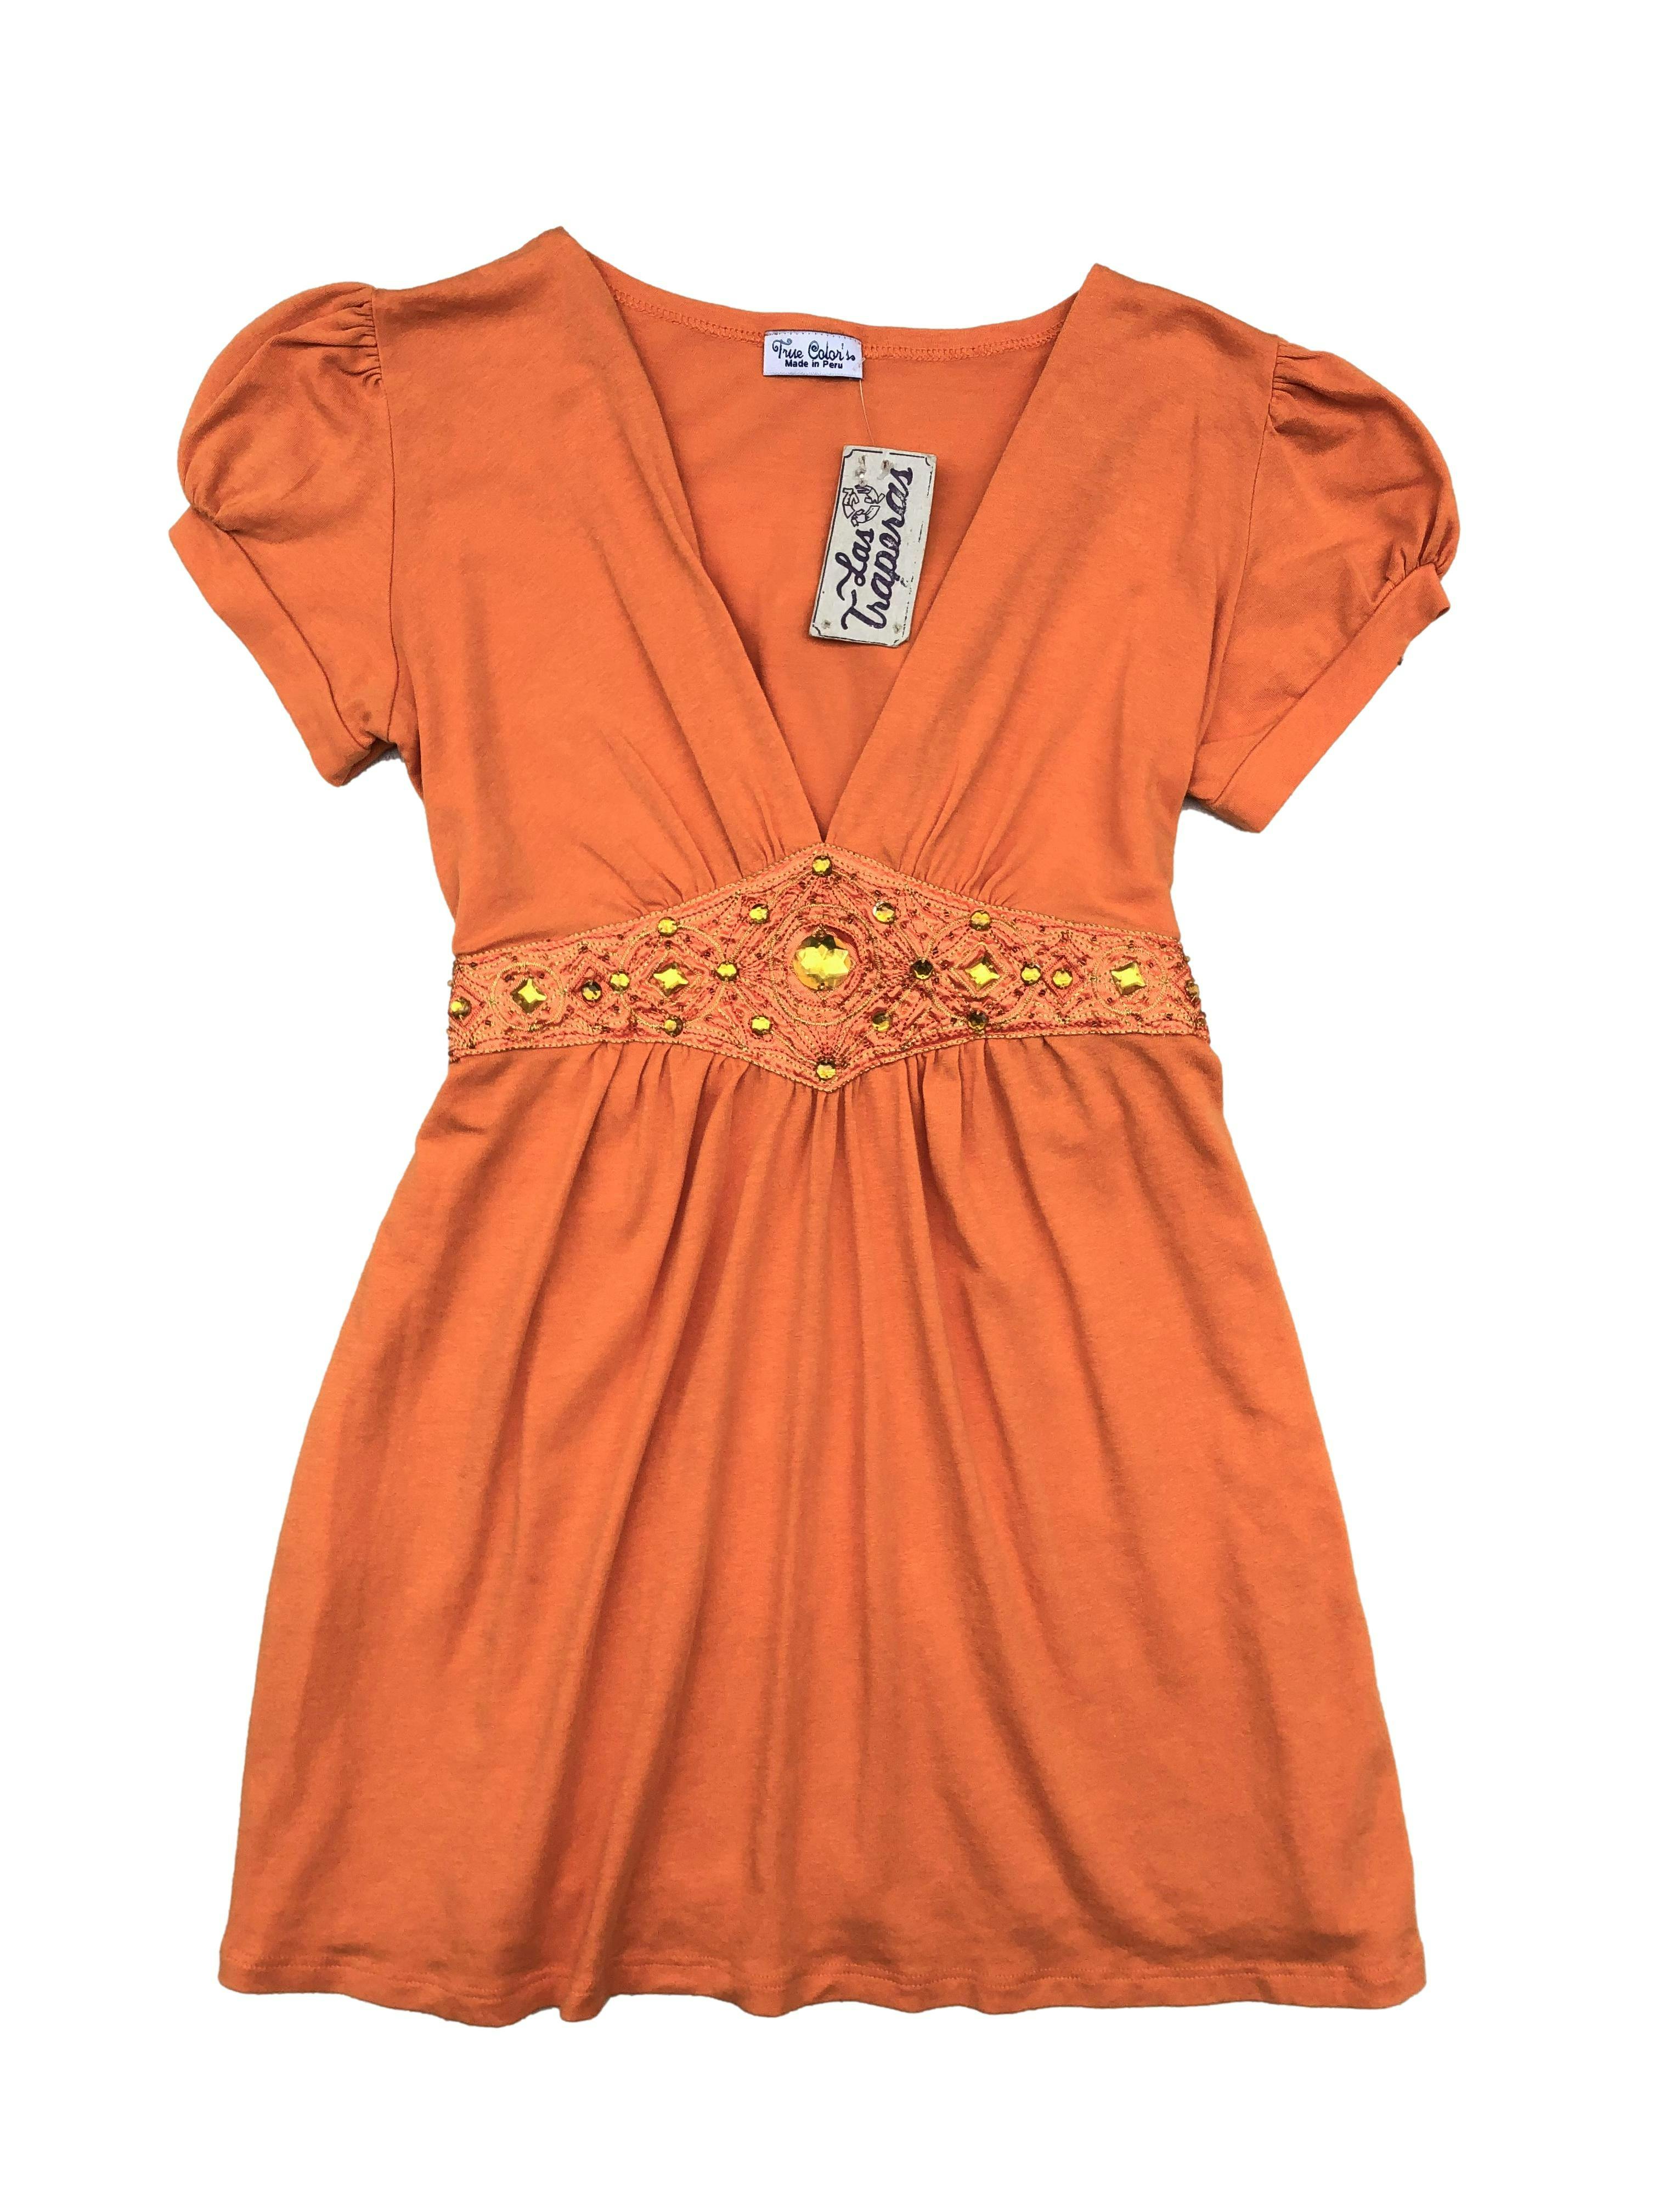 Polo de algodón naranja, escote en V con pedrería bajo el busto y cinto para amarrar. Busto: 80cm, Largo: 62cm